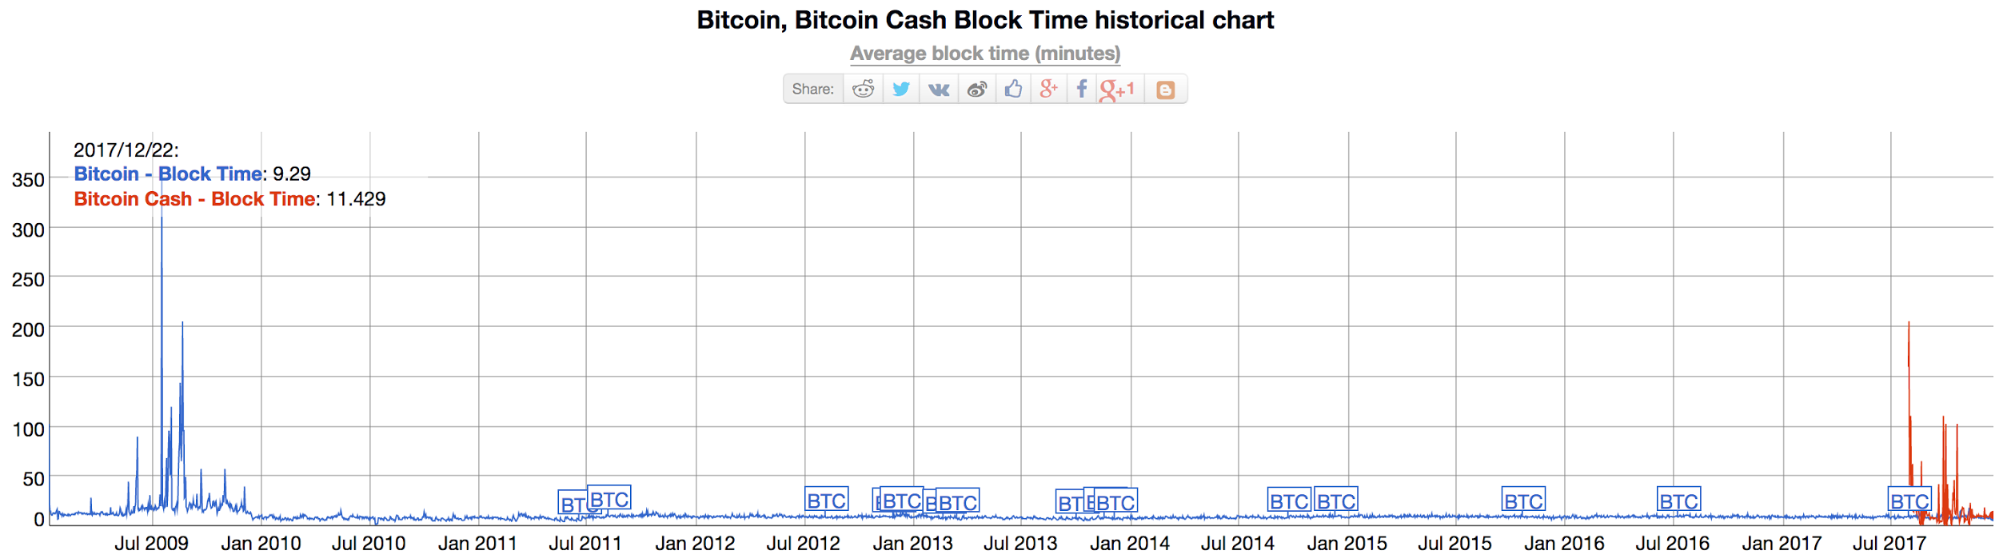 Bitcoin Cash Block Time